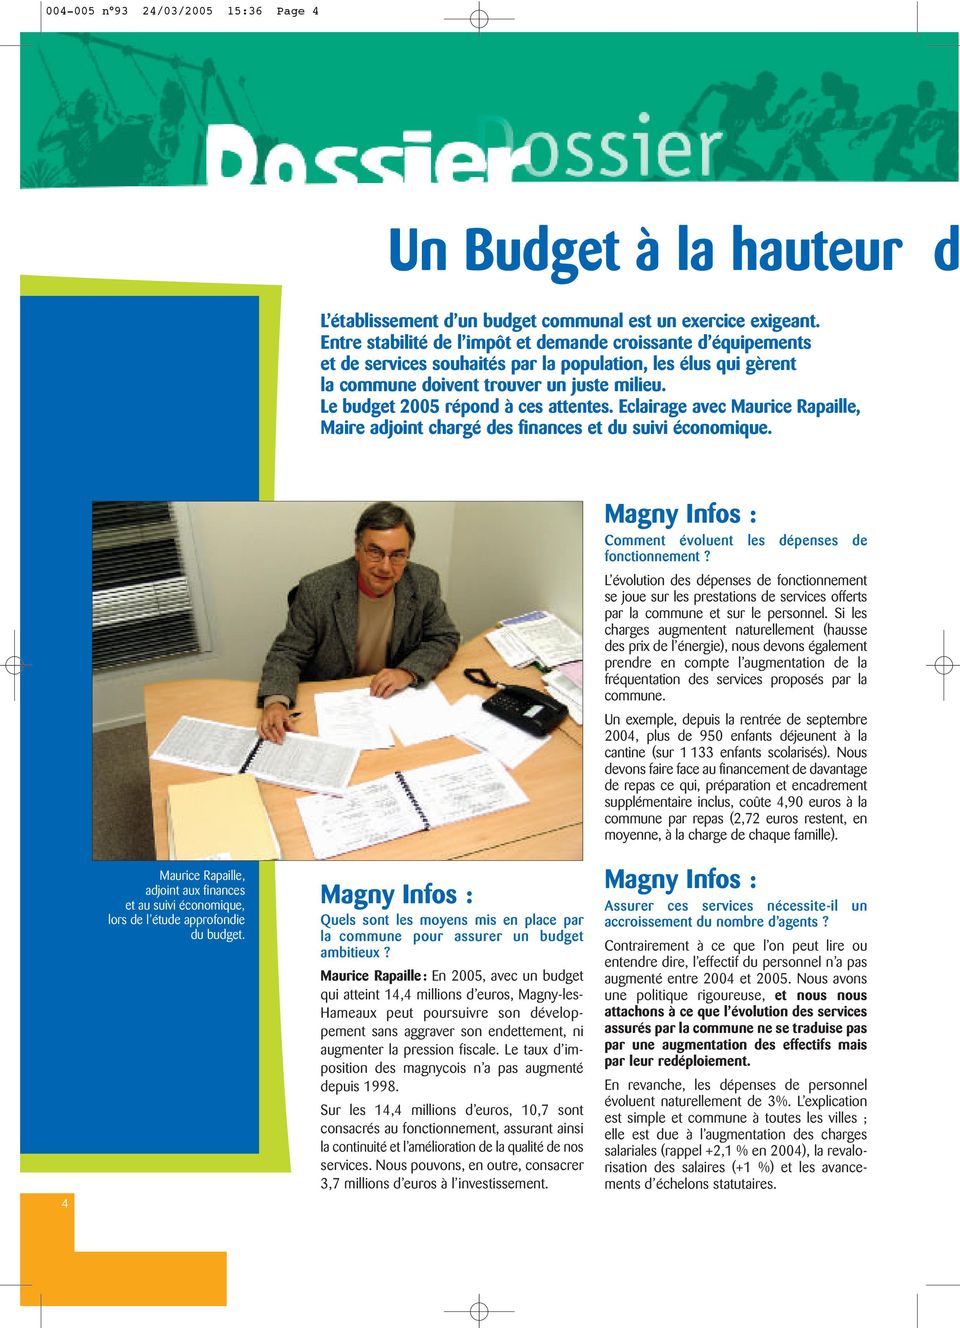 Le budget 2005 répond à ces attentes. Eclairage avec Maurice Rapaille, Maire adjoint chargé des finances et du suivi économique. Magny Infos : Comment évoluent les dépenses de fonctionnement?